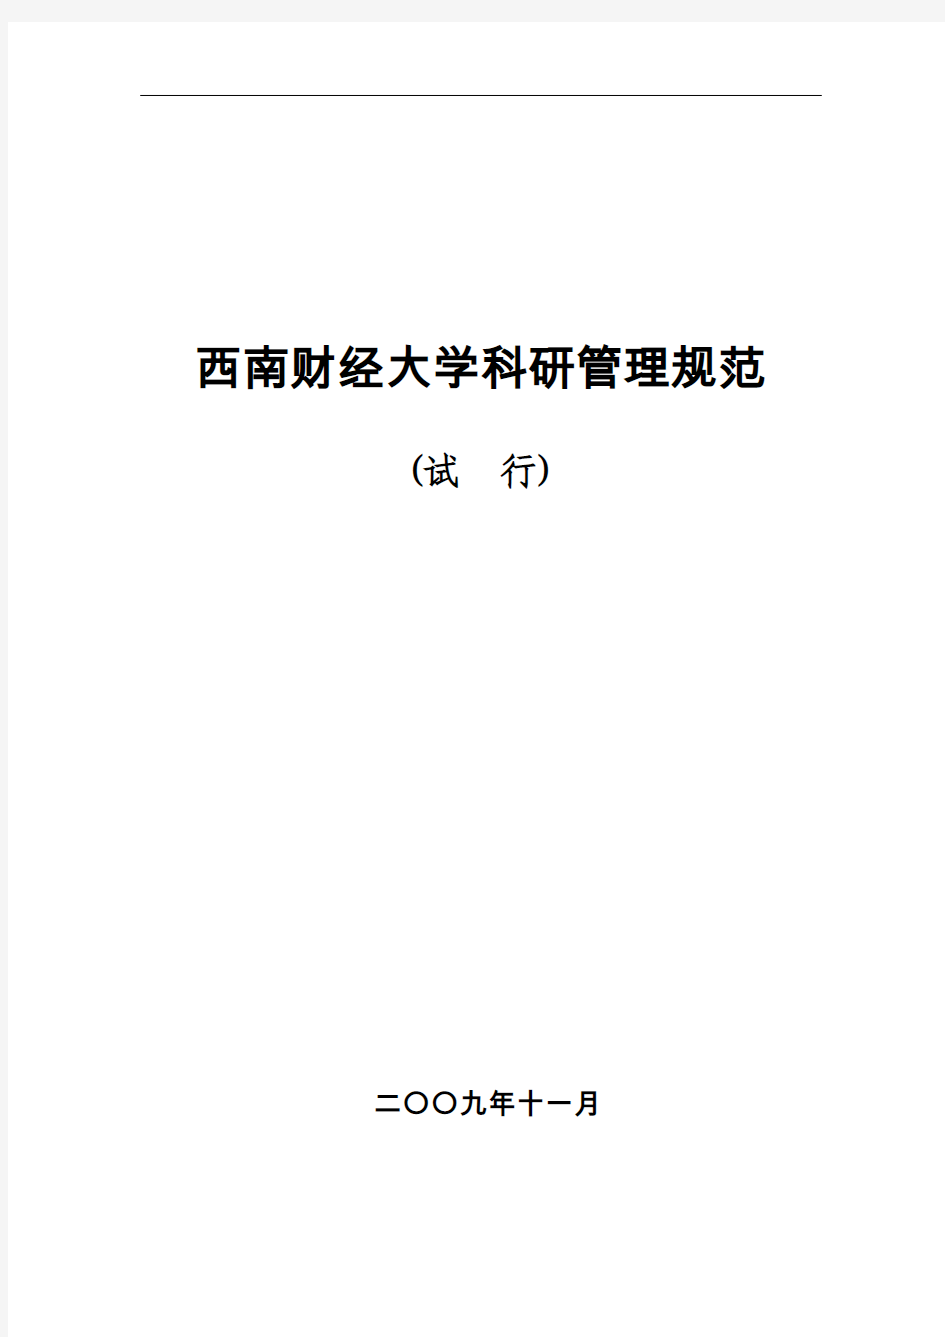 西南财经大学中文学术期刊等级分类目录(2009年版修订版)